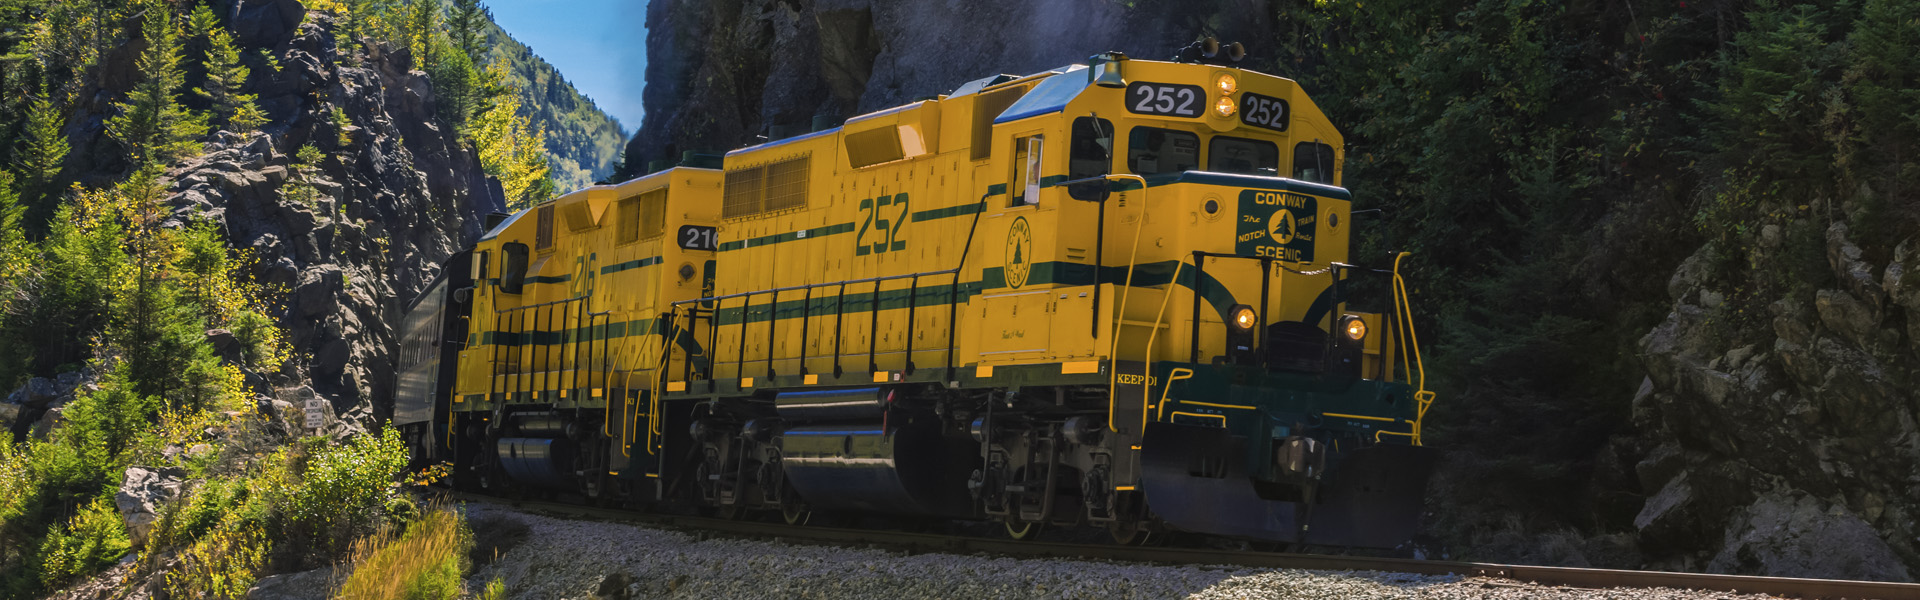 Conway Scenic Railroad 252